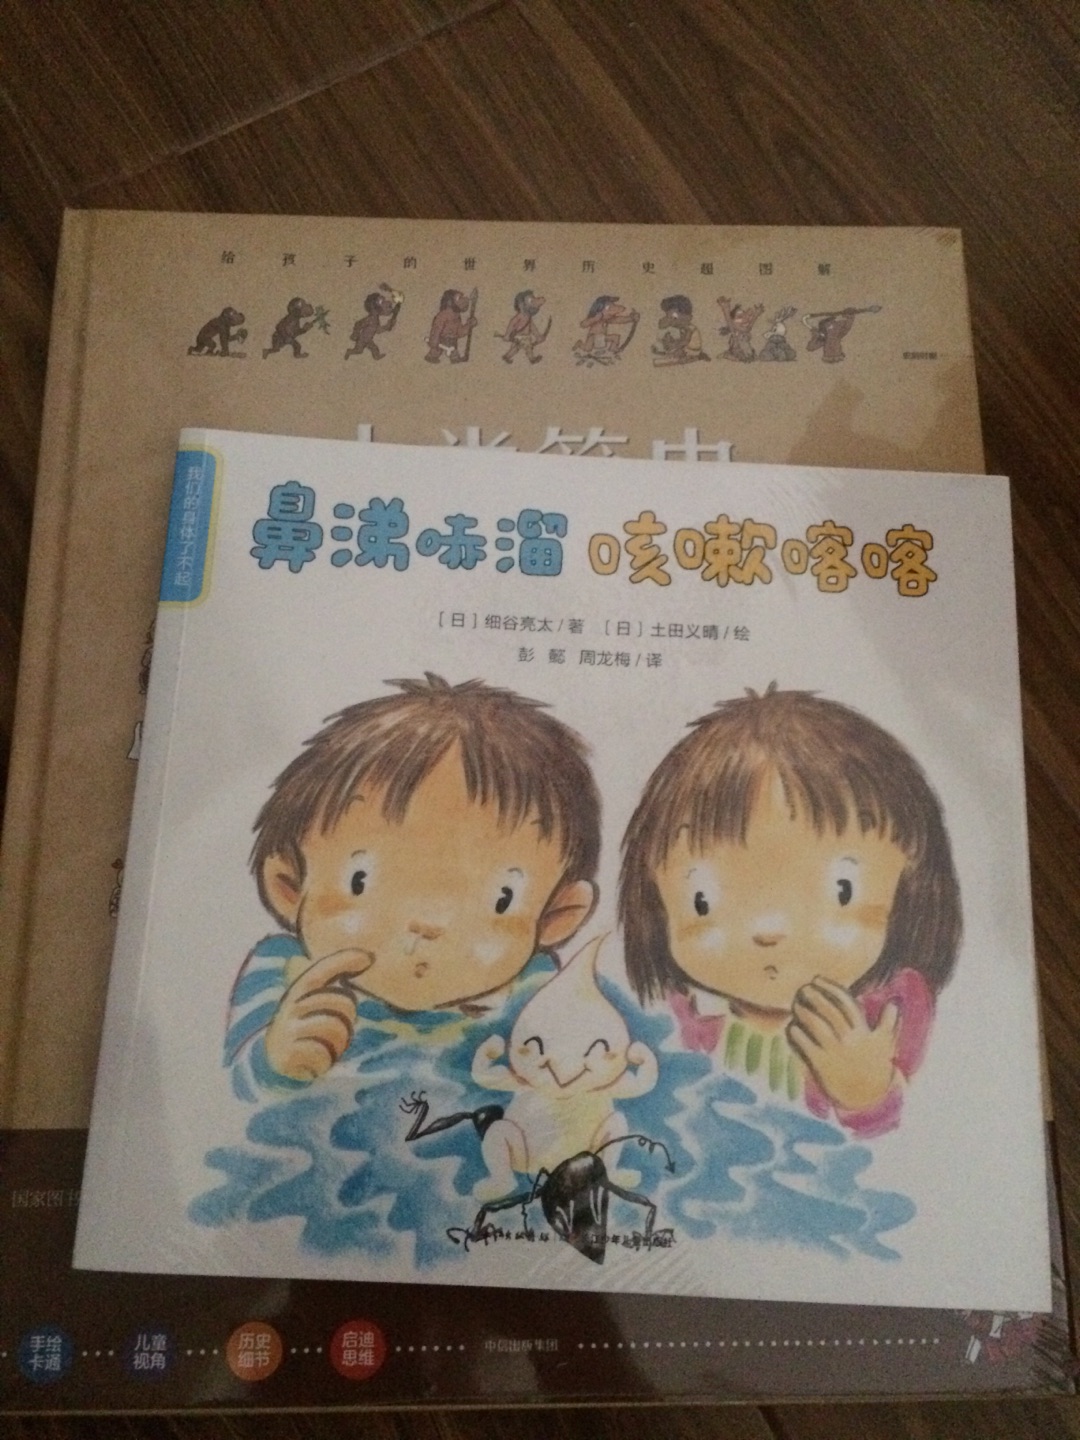 日本人的著作，很有趣，很优惠入手，不错不错。